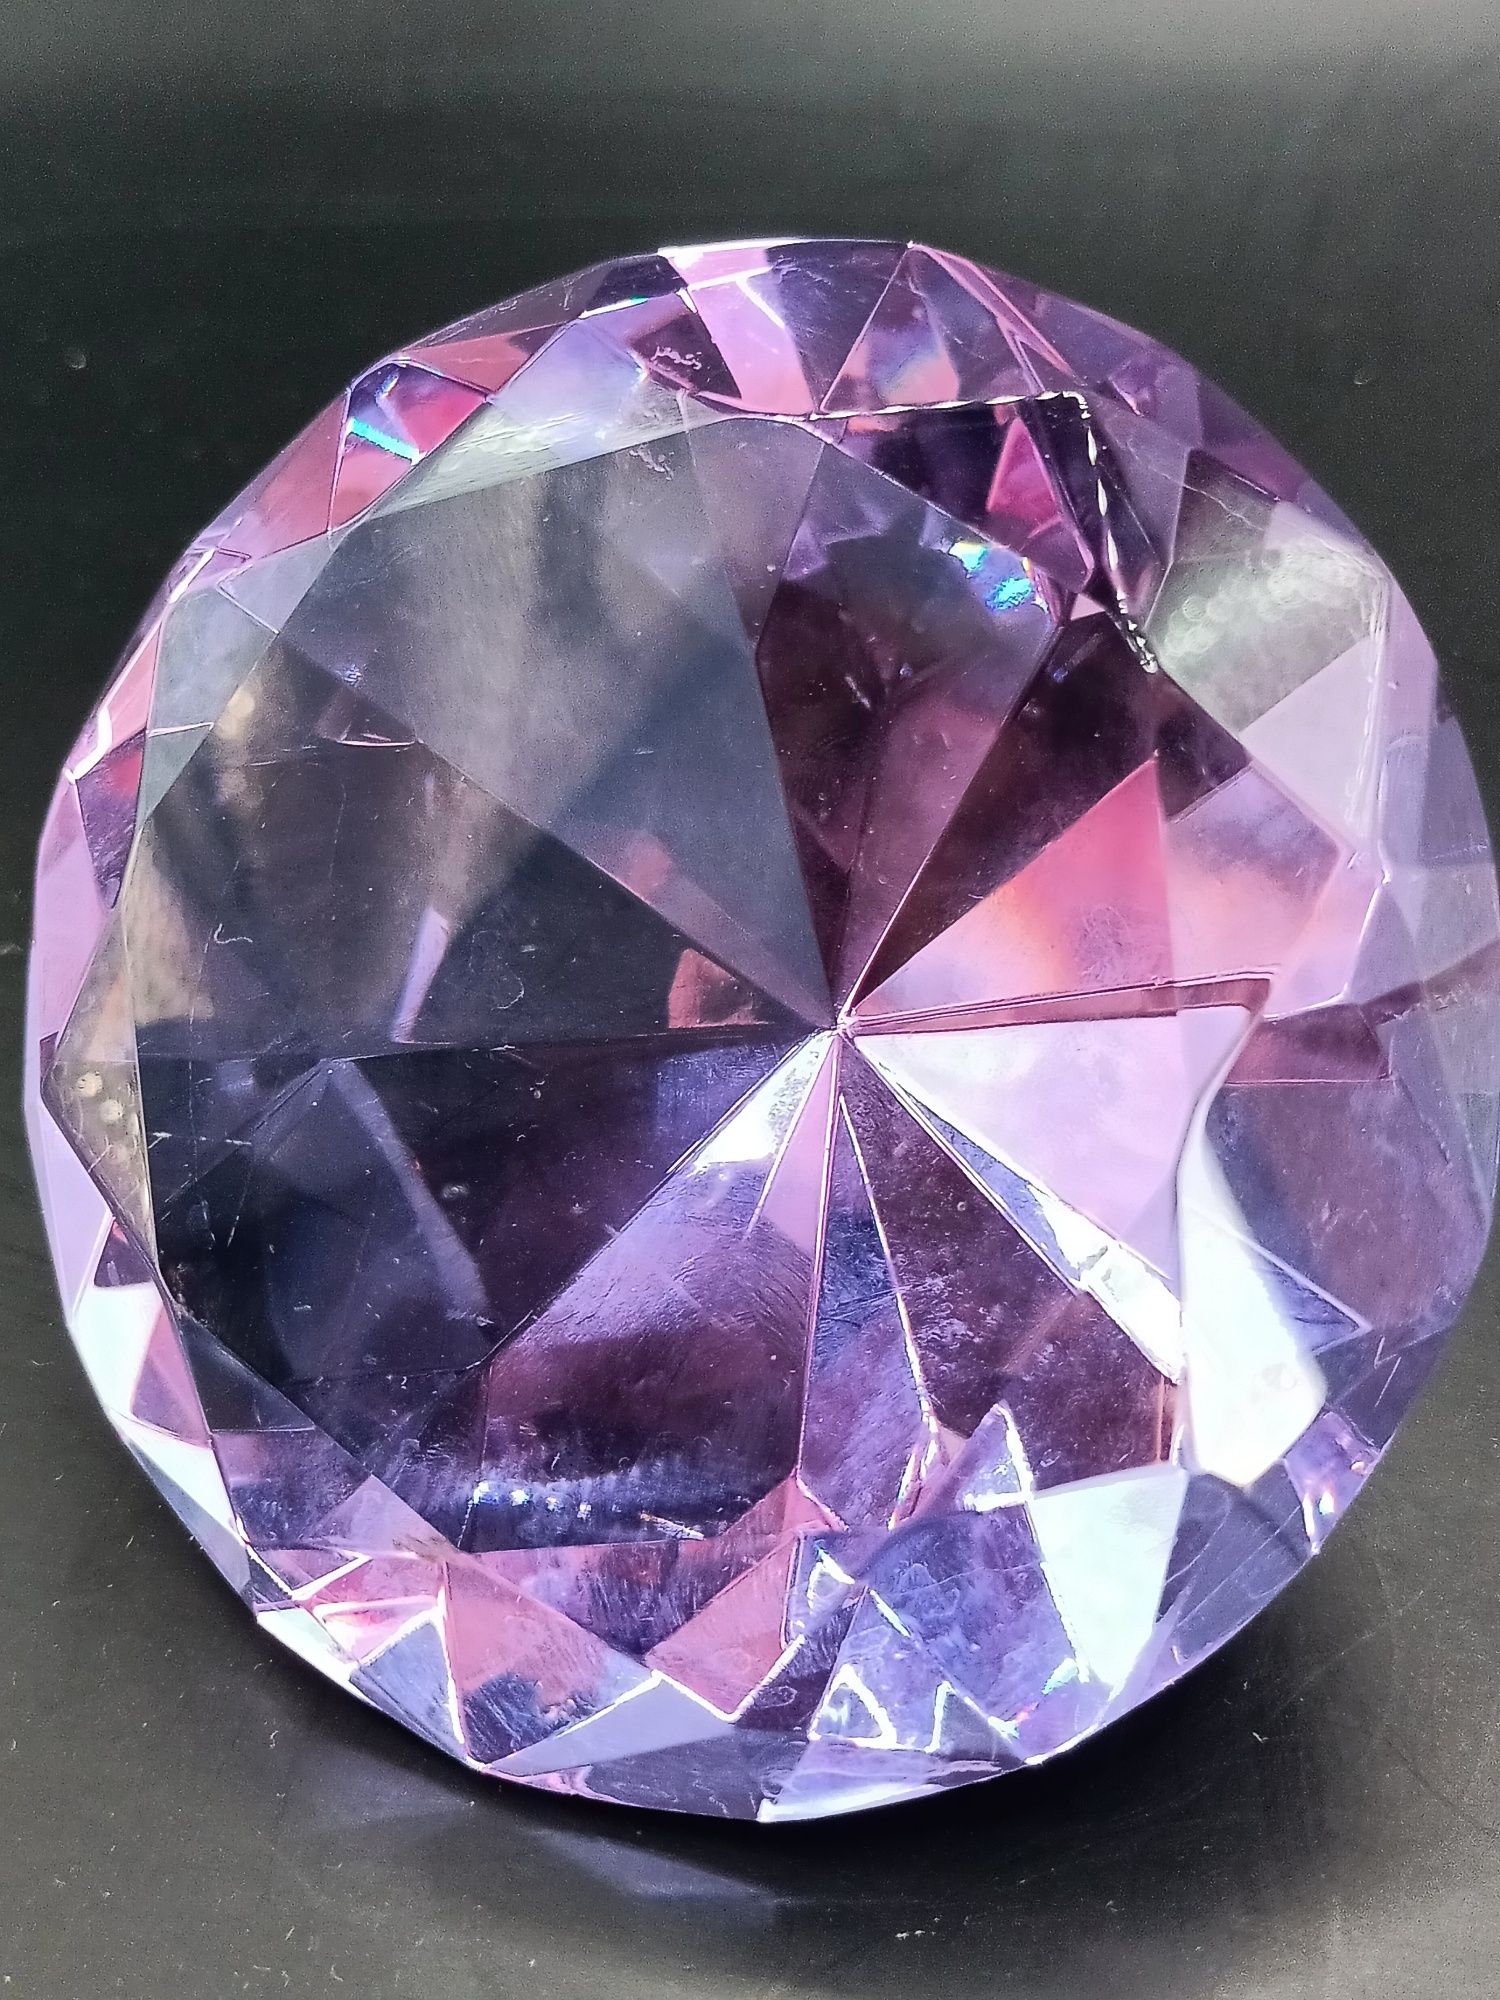 Dekoracja szkło sztuczny diament duży fioletowy